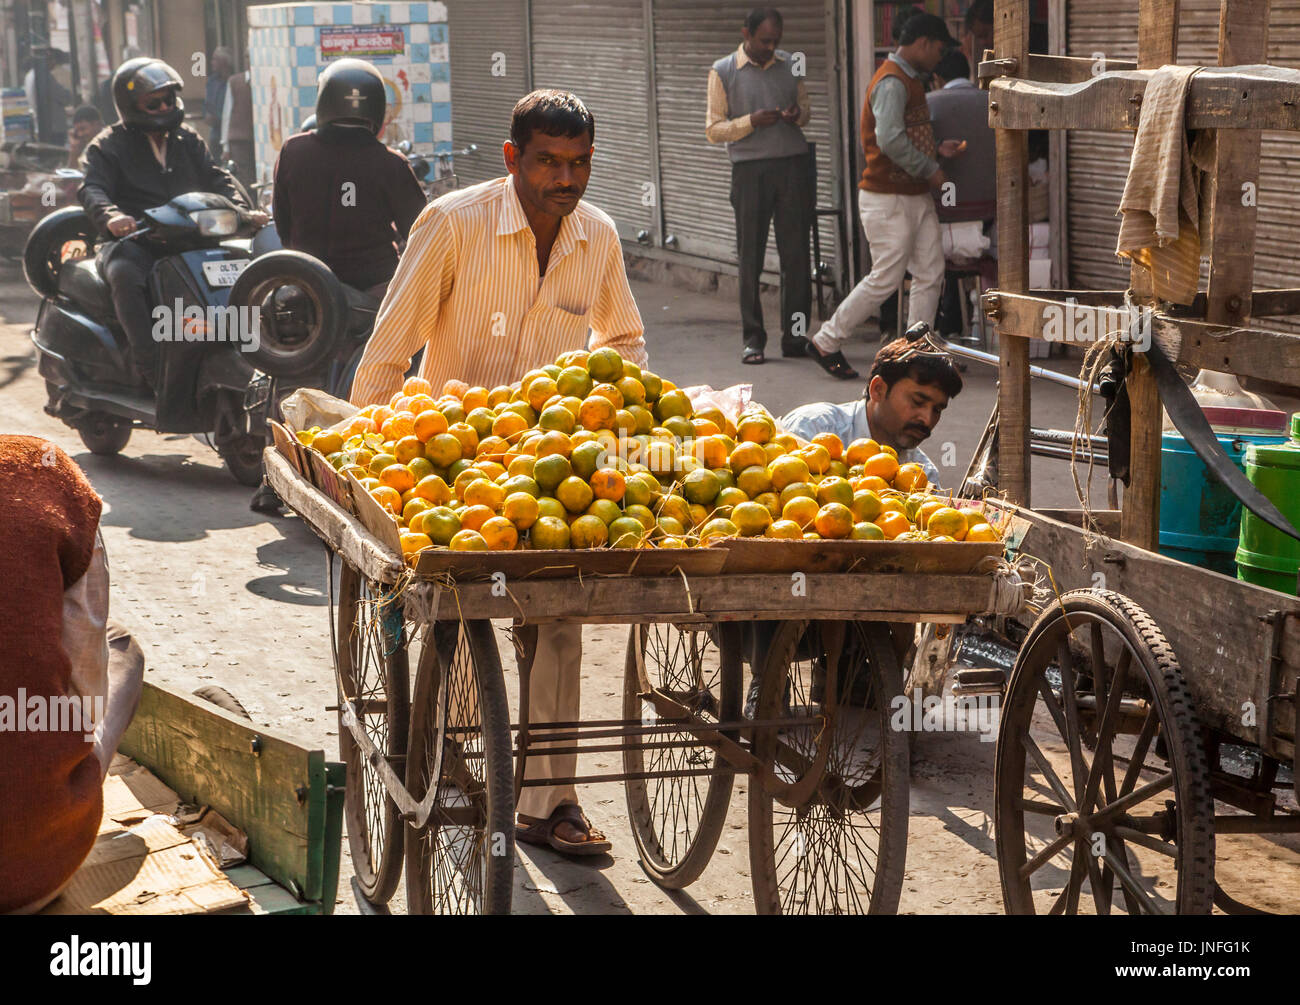 Un homme dans la rue en poussant son panier d'oranges pelées et non pelées, Chandni Chowk, Old Delhi, Inde. Banque D'Images